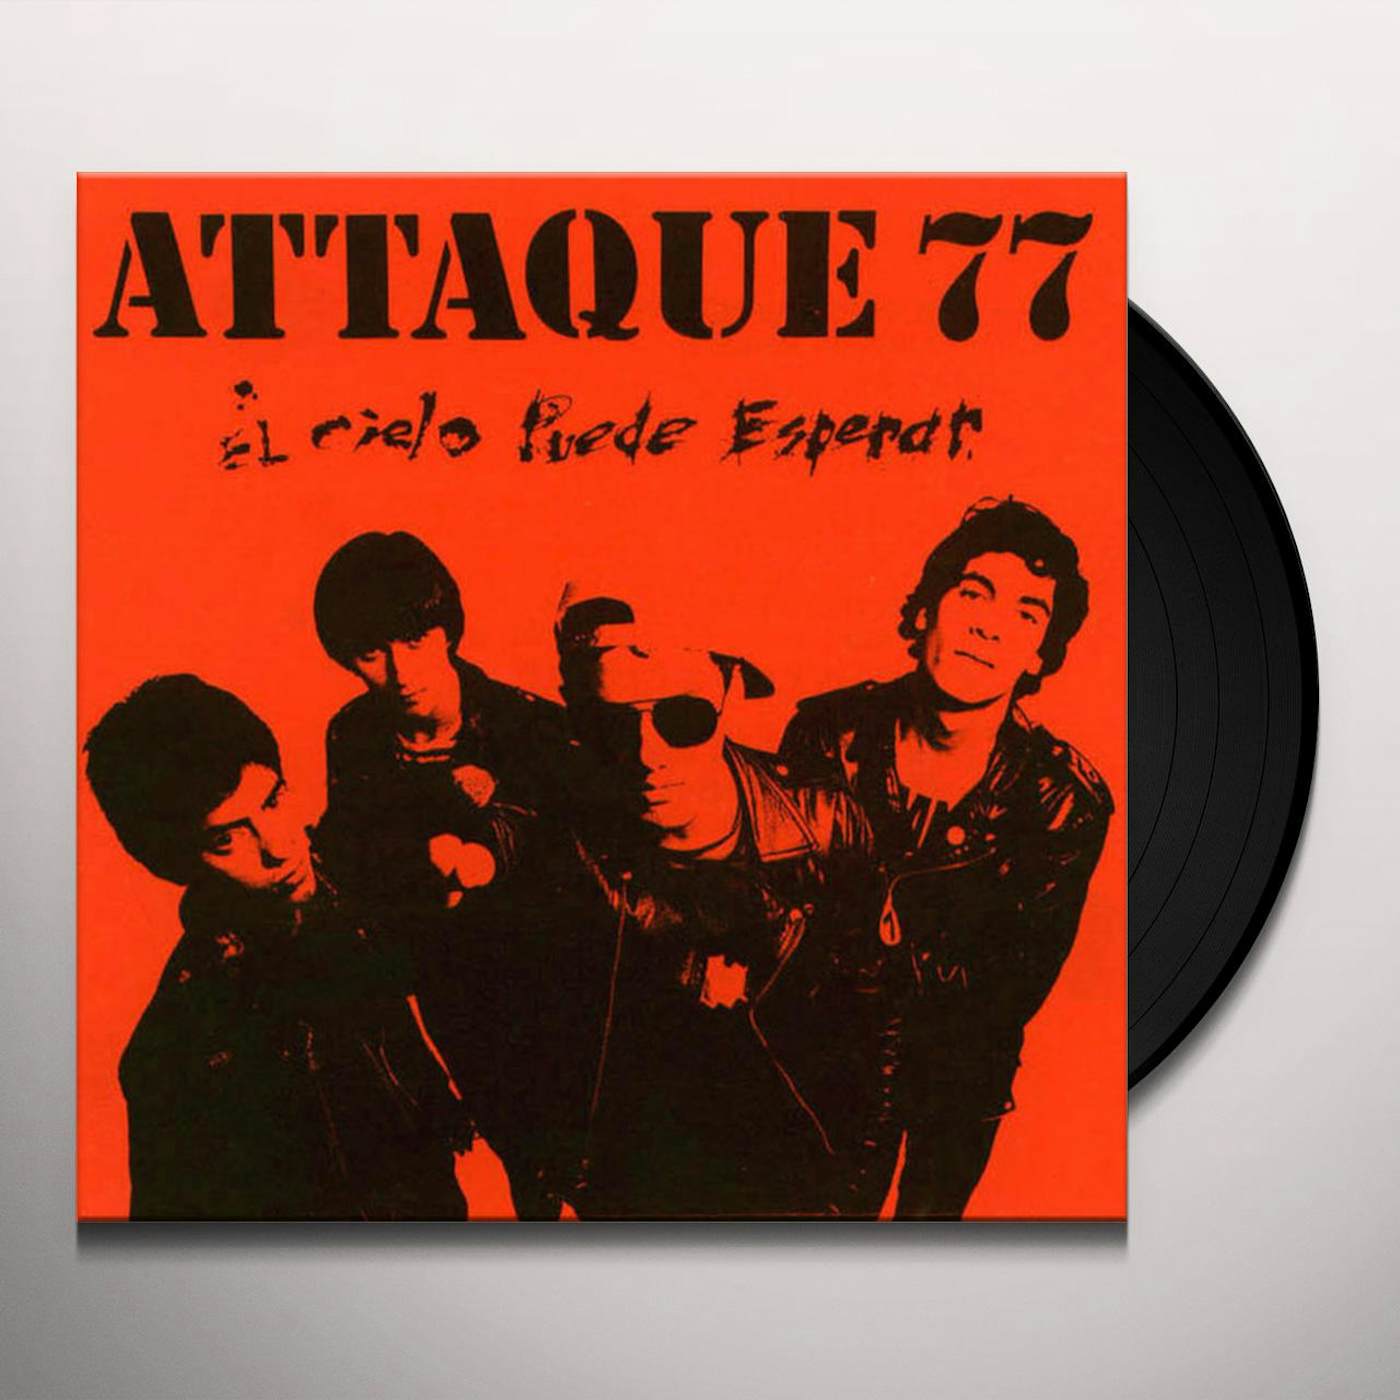 Attaque 77 El Cielo Puede Esperar Vinyl Record